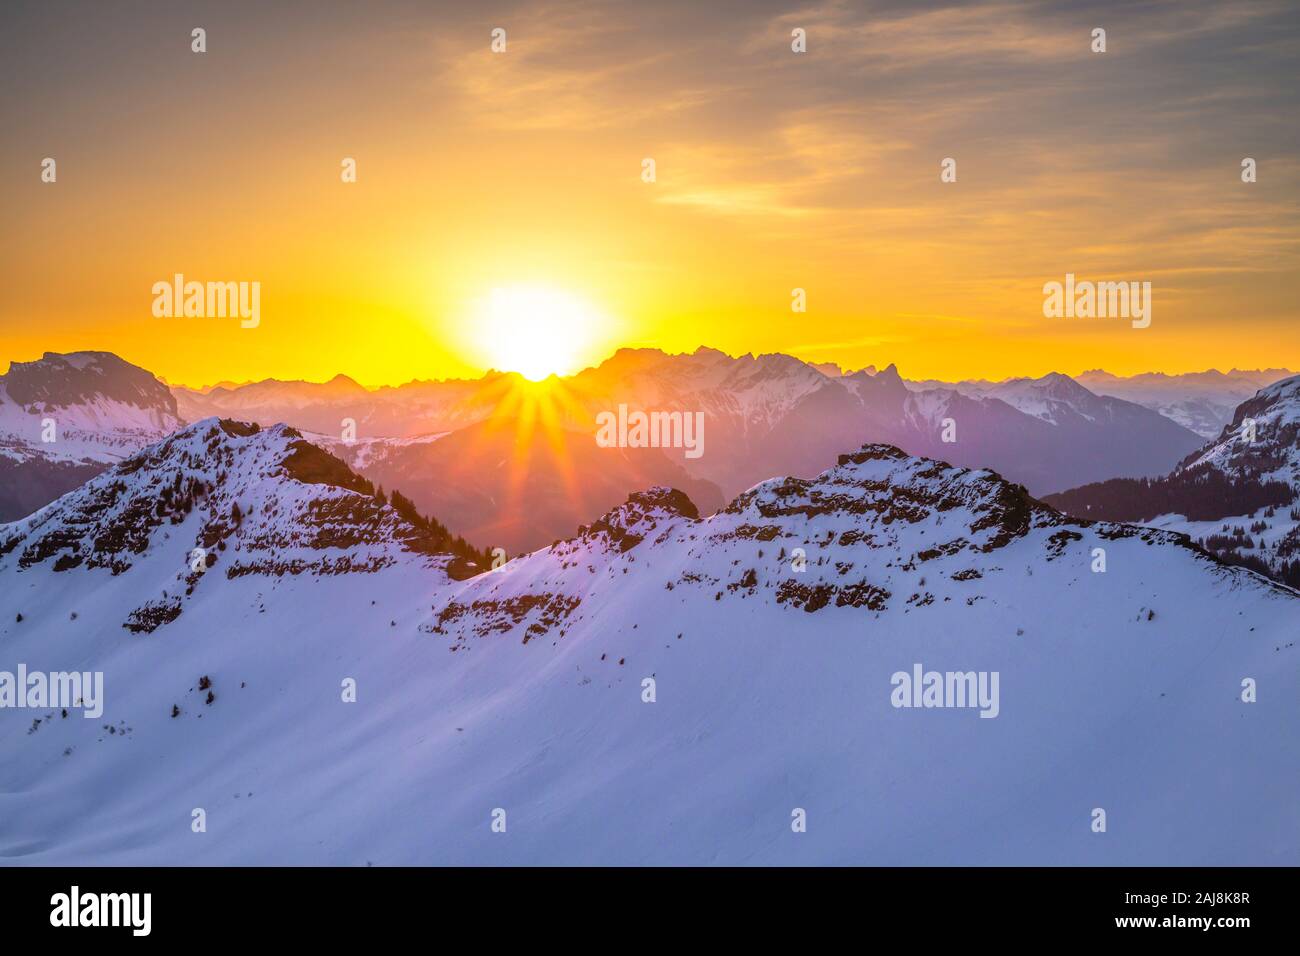 Alba in montagna immagini e fotografie stock ad alta risoluzione - Alamy